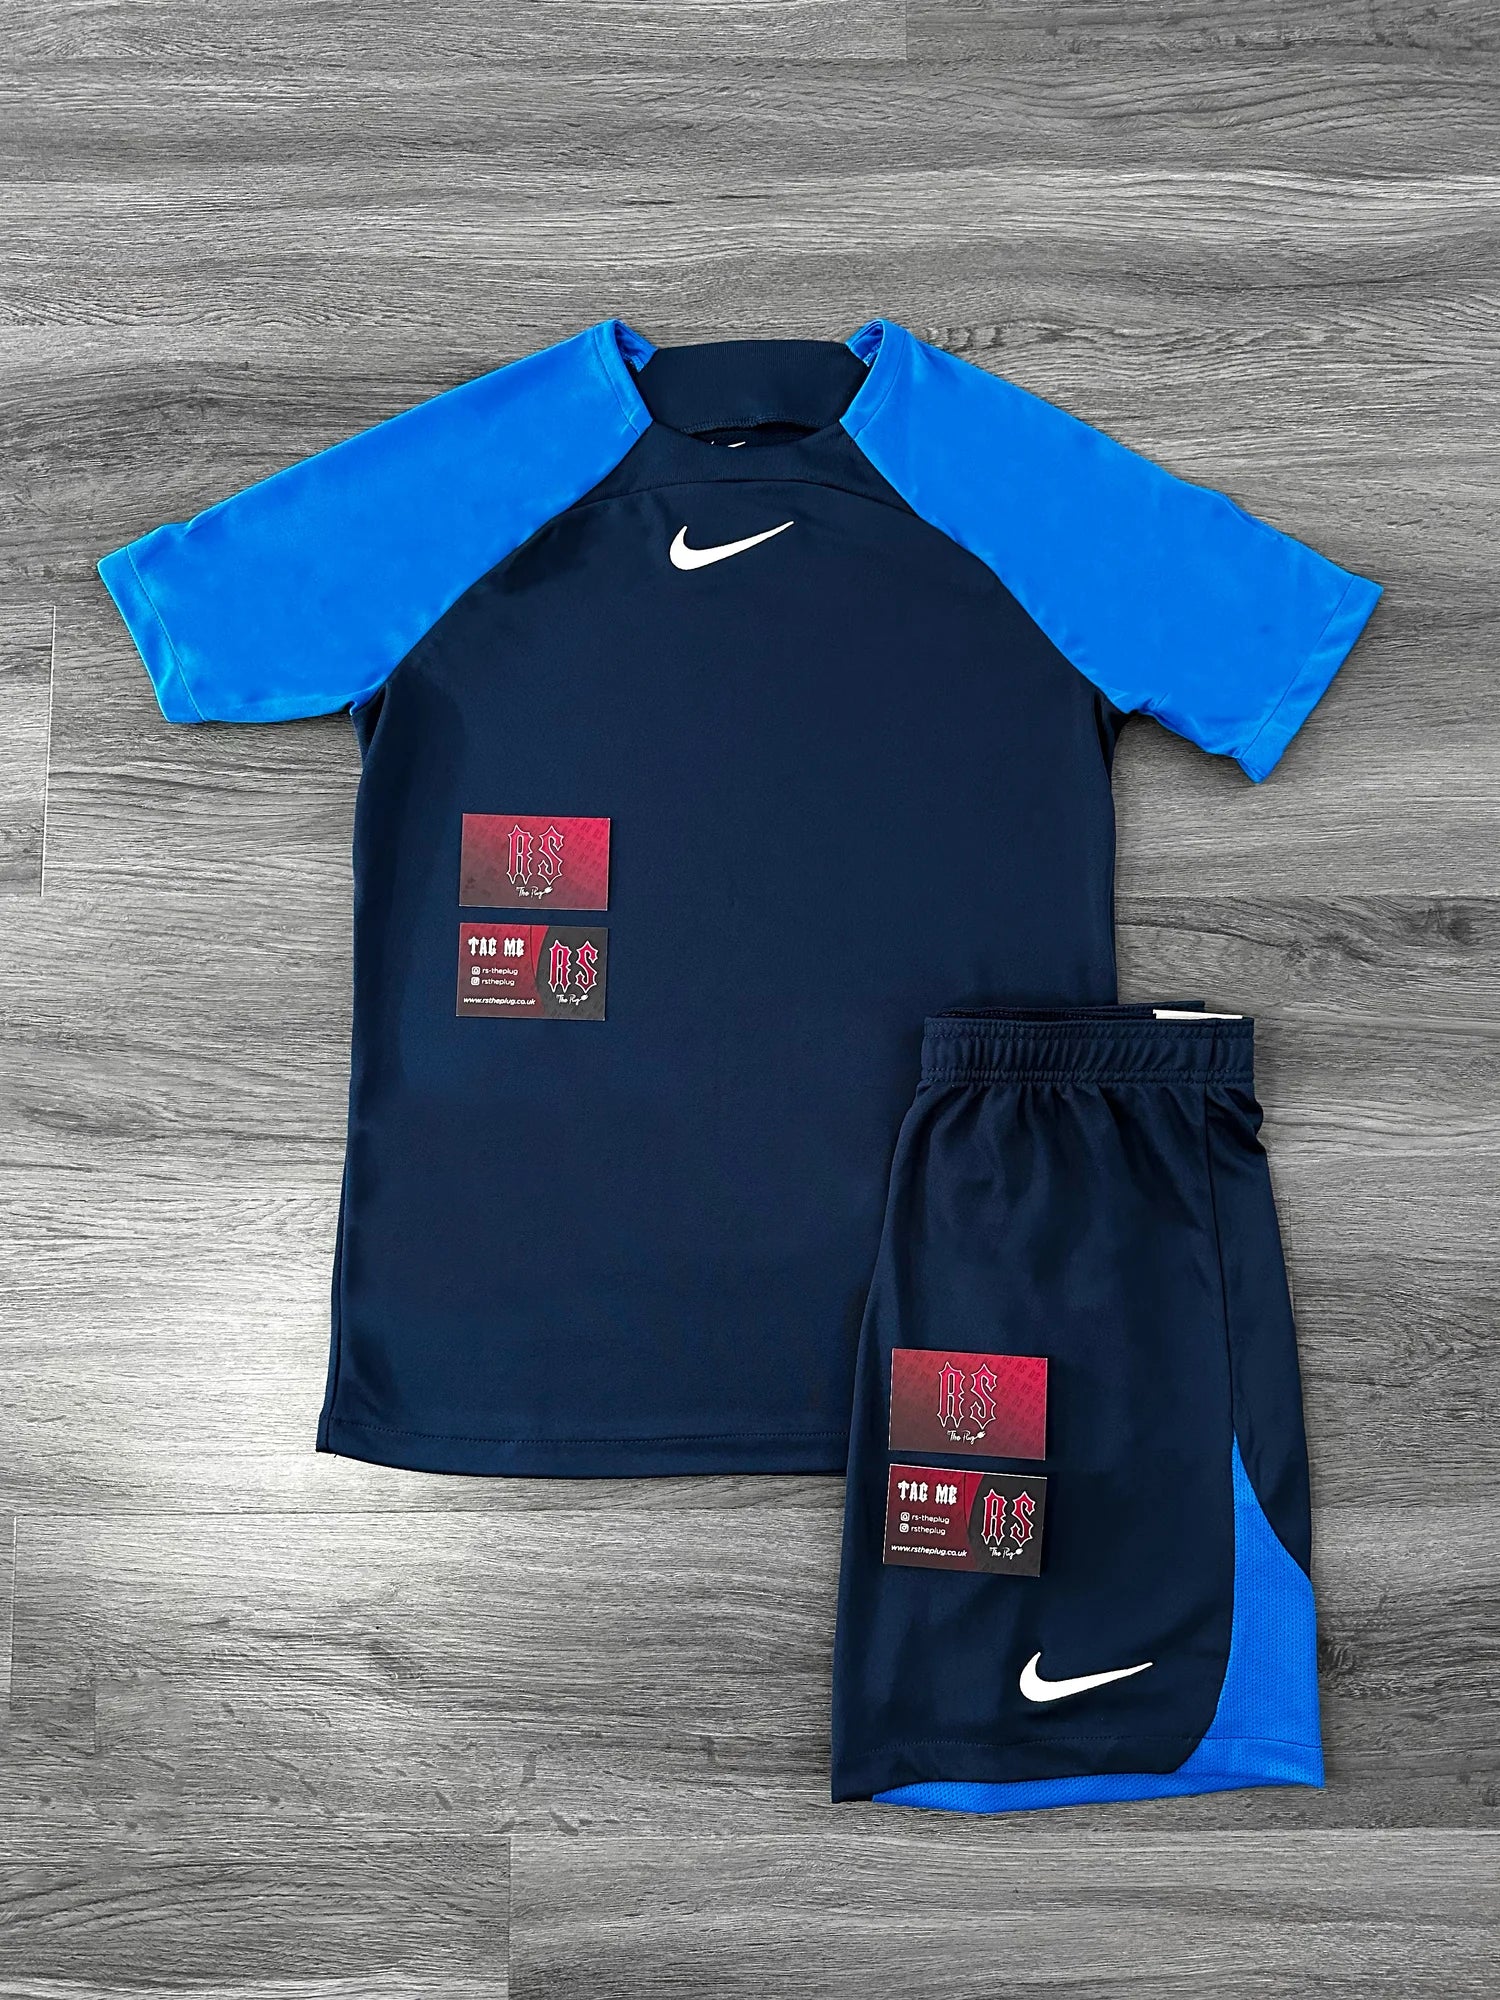 Nike Dri Fit Short Set Royal Blue/Obsidian